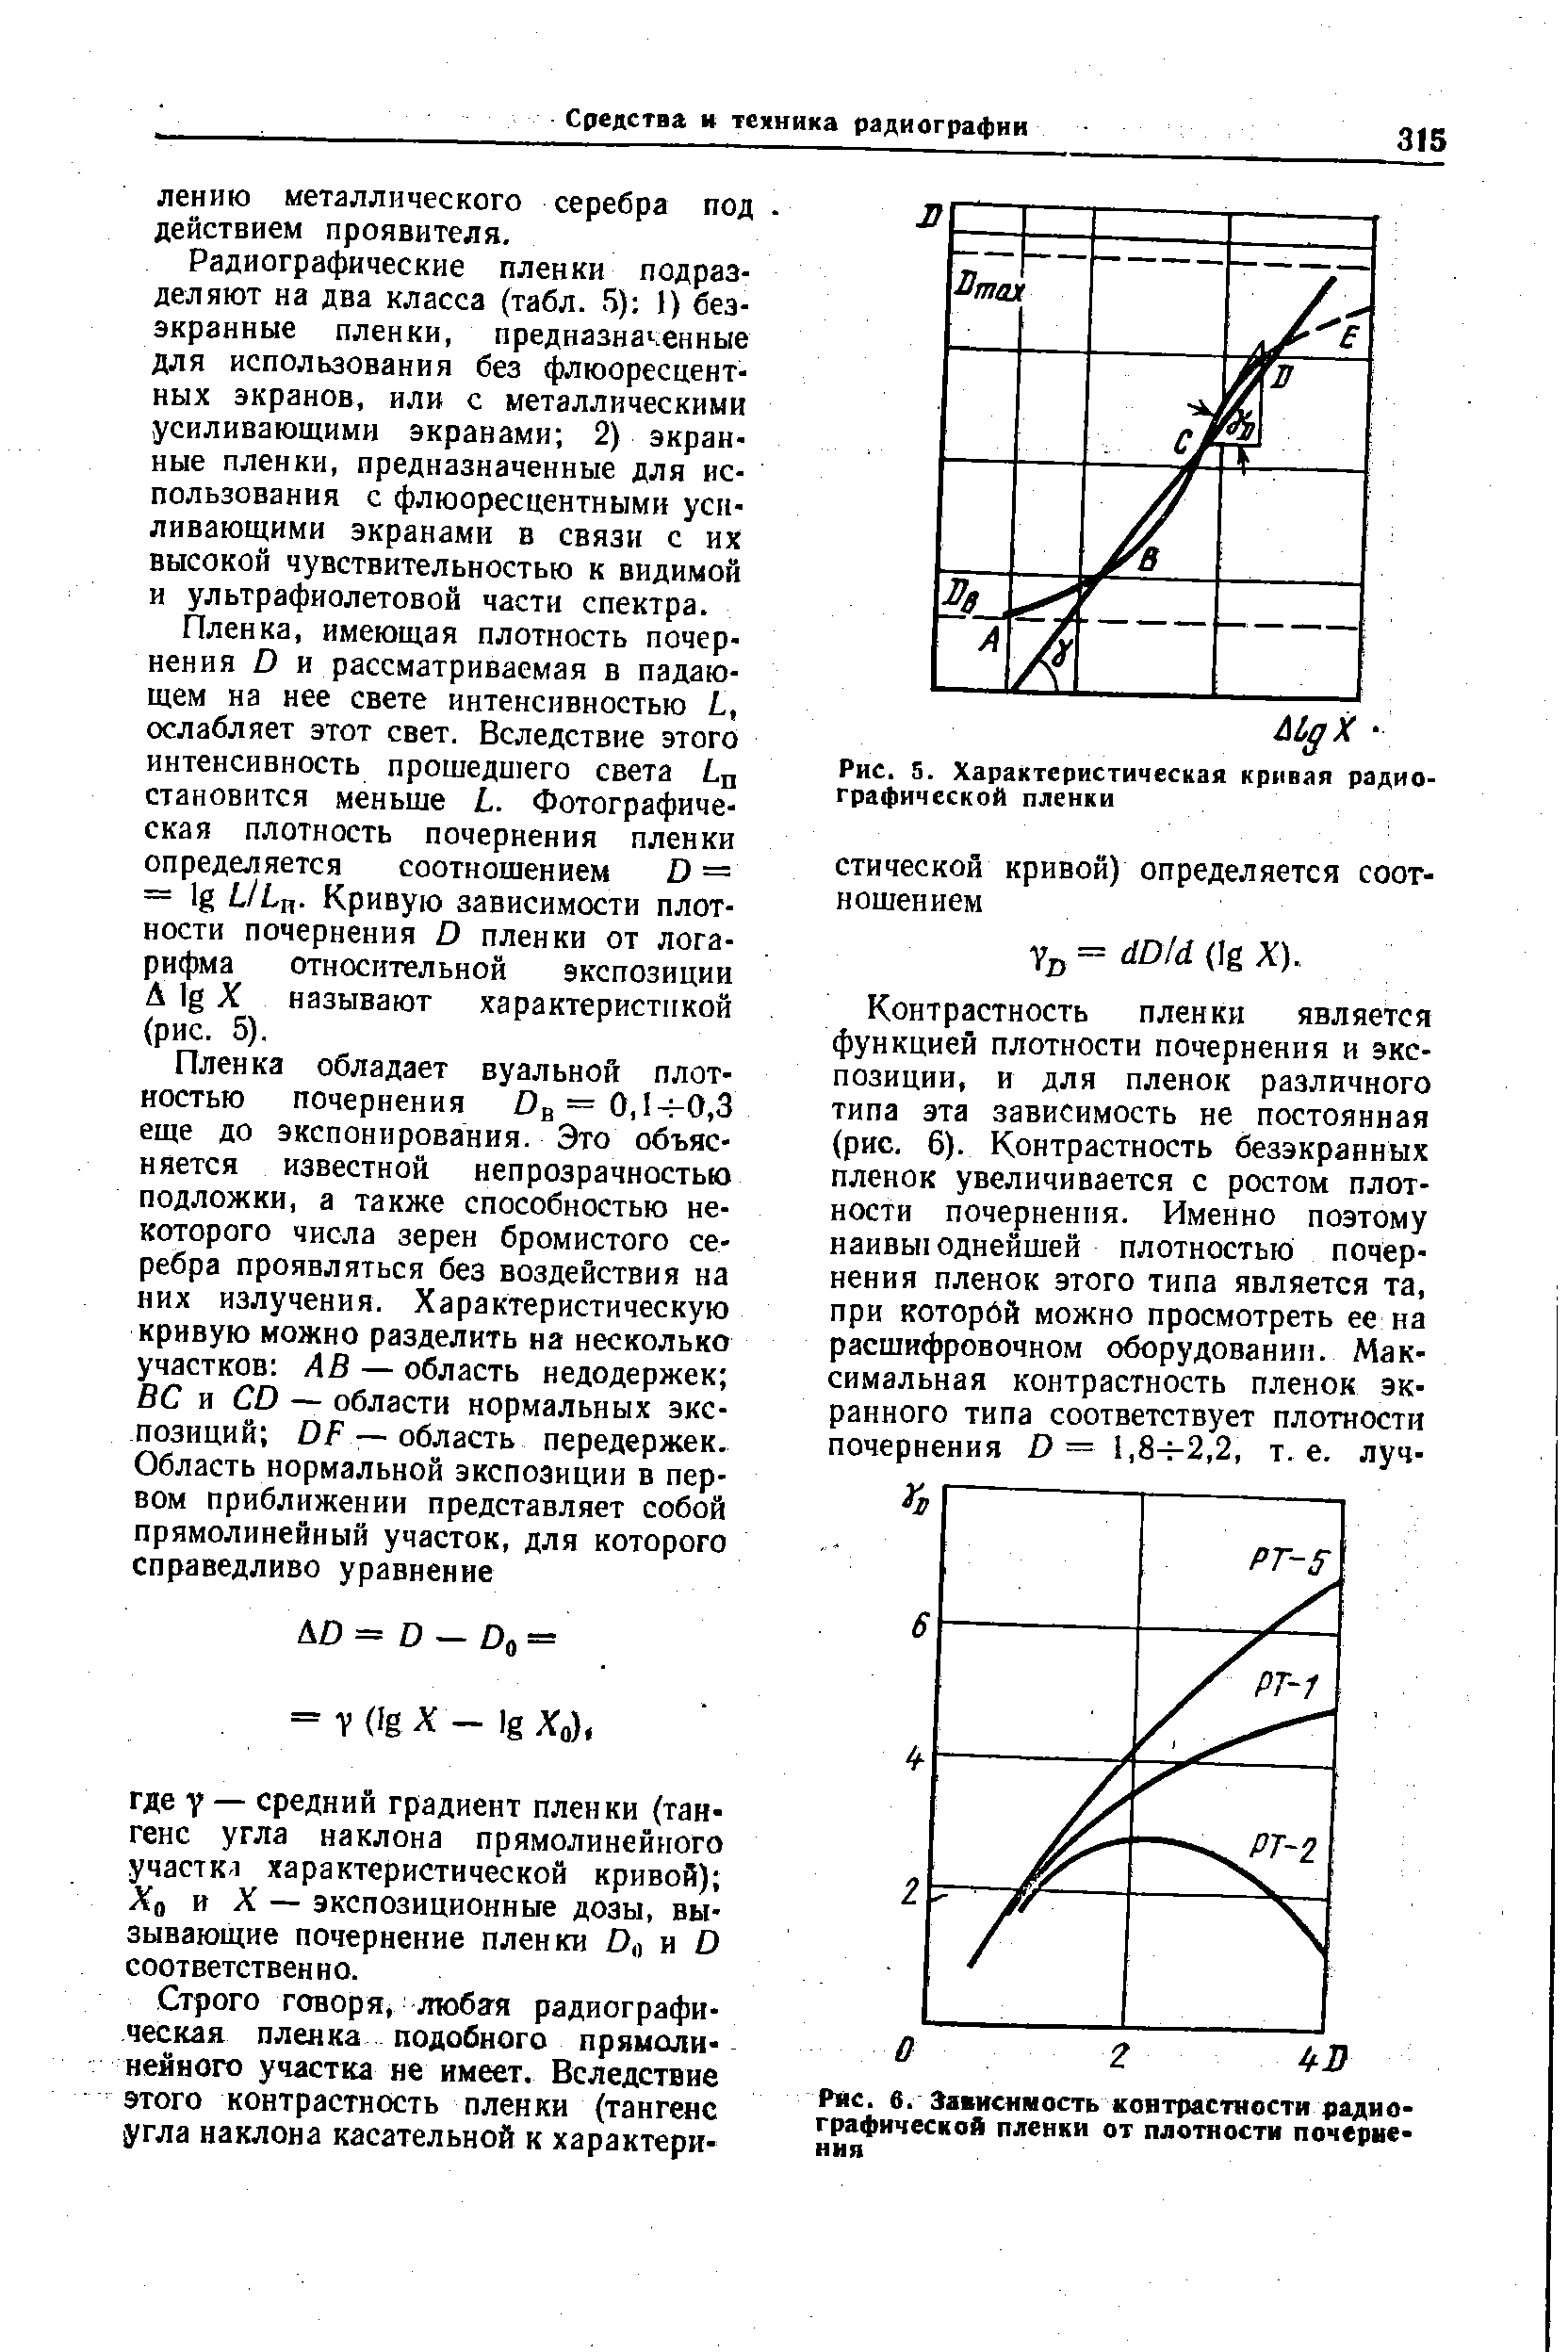 Рис. 5. Характеристическая кривая радиографической пленки
